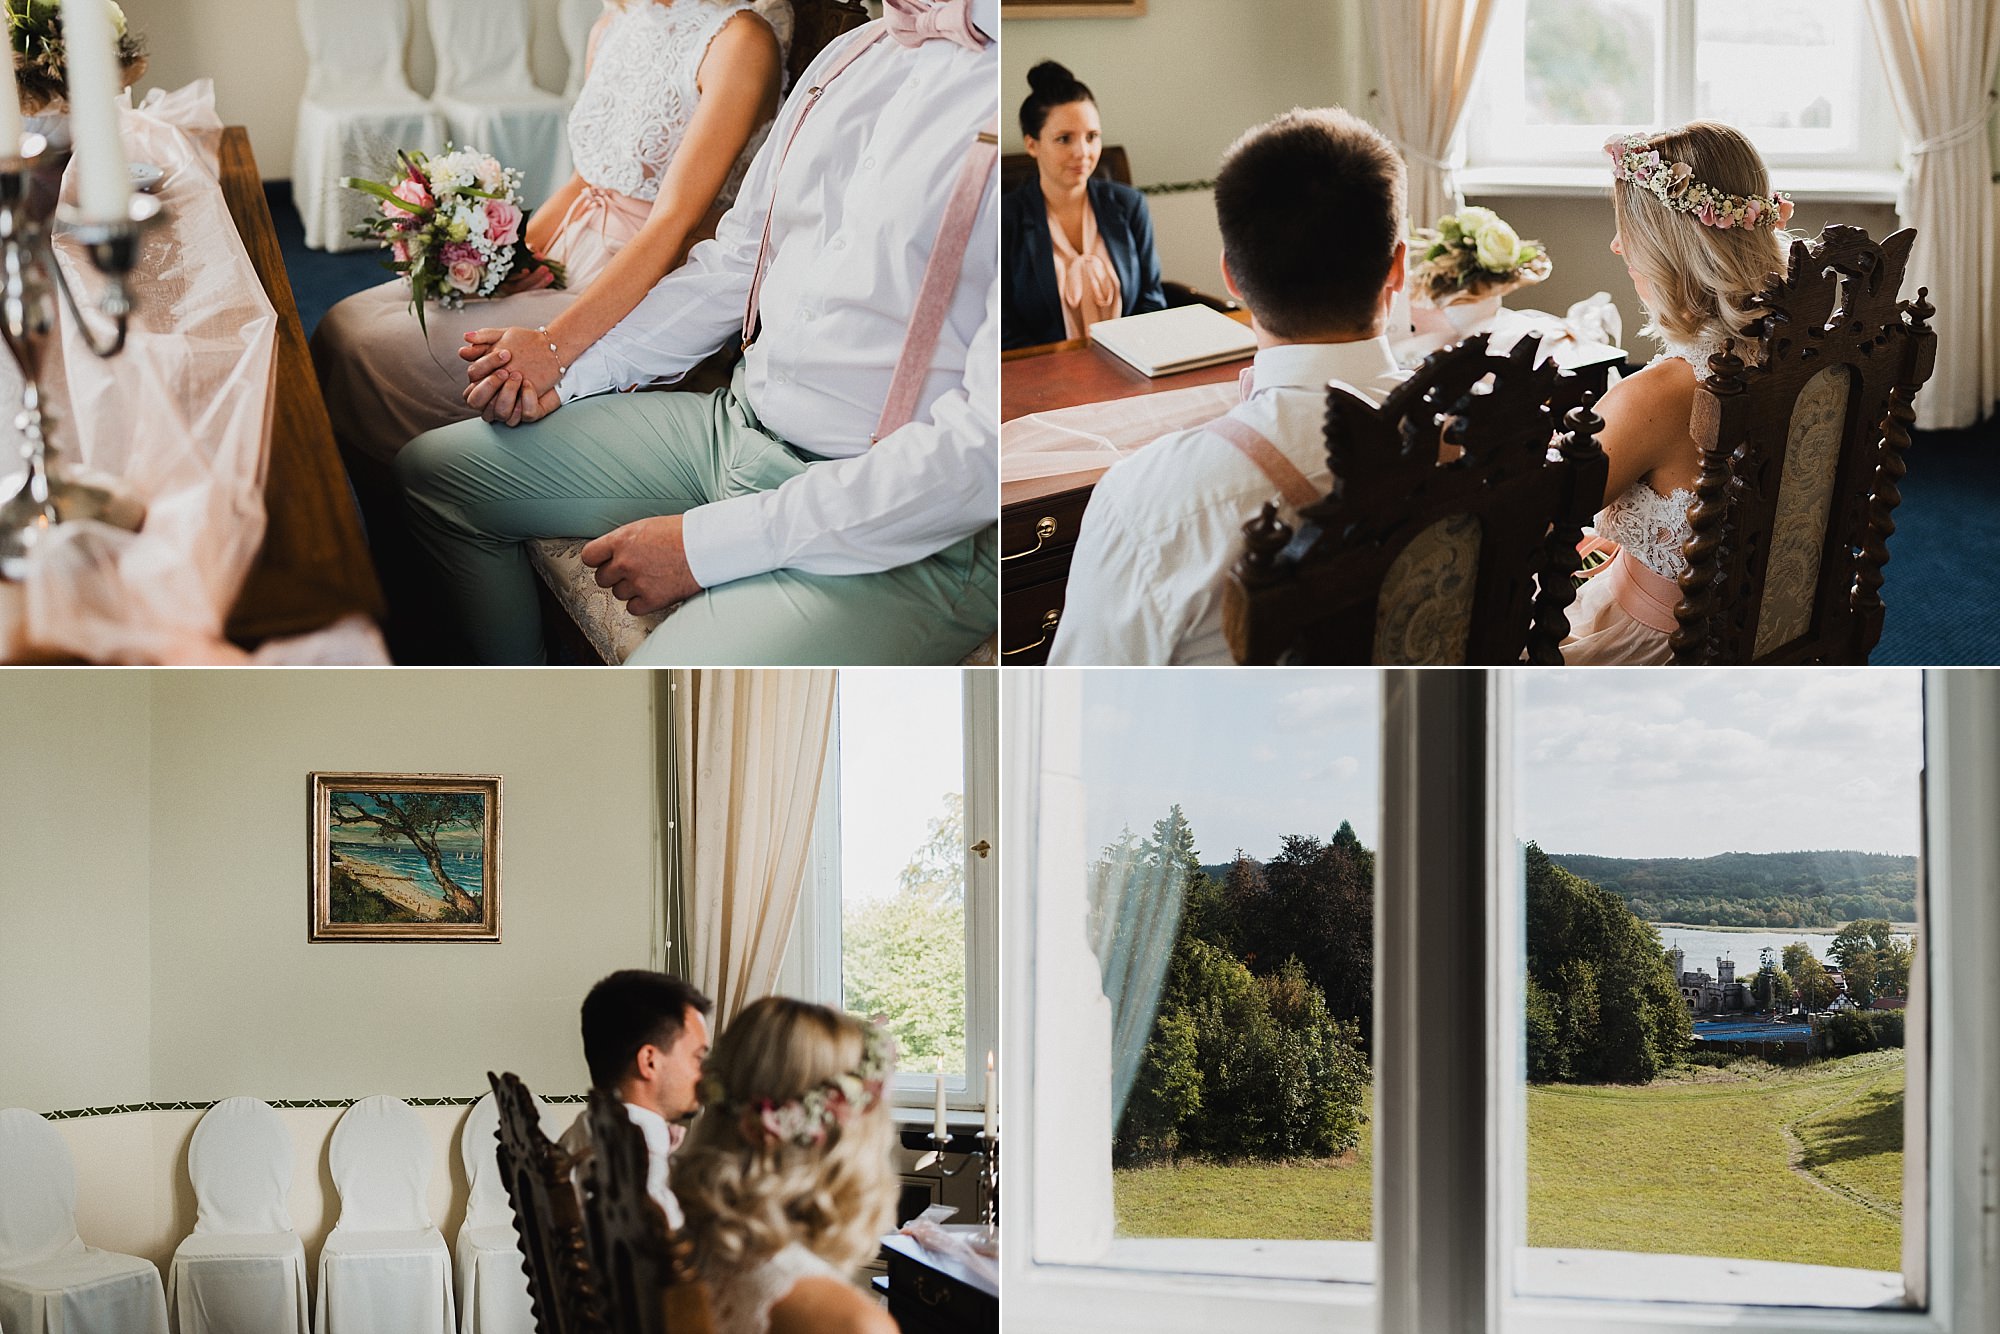 Hochzeit im Schlosshotel Ralswiek - Hochzeitsreportage auf Rügen - Heiraten im Schloss Ralswiek, Granitz oder Ranzow - Hochzeitsfotograf Ostsee